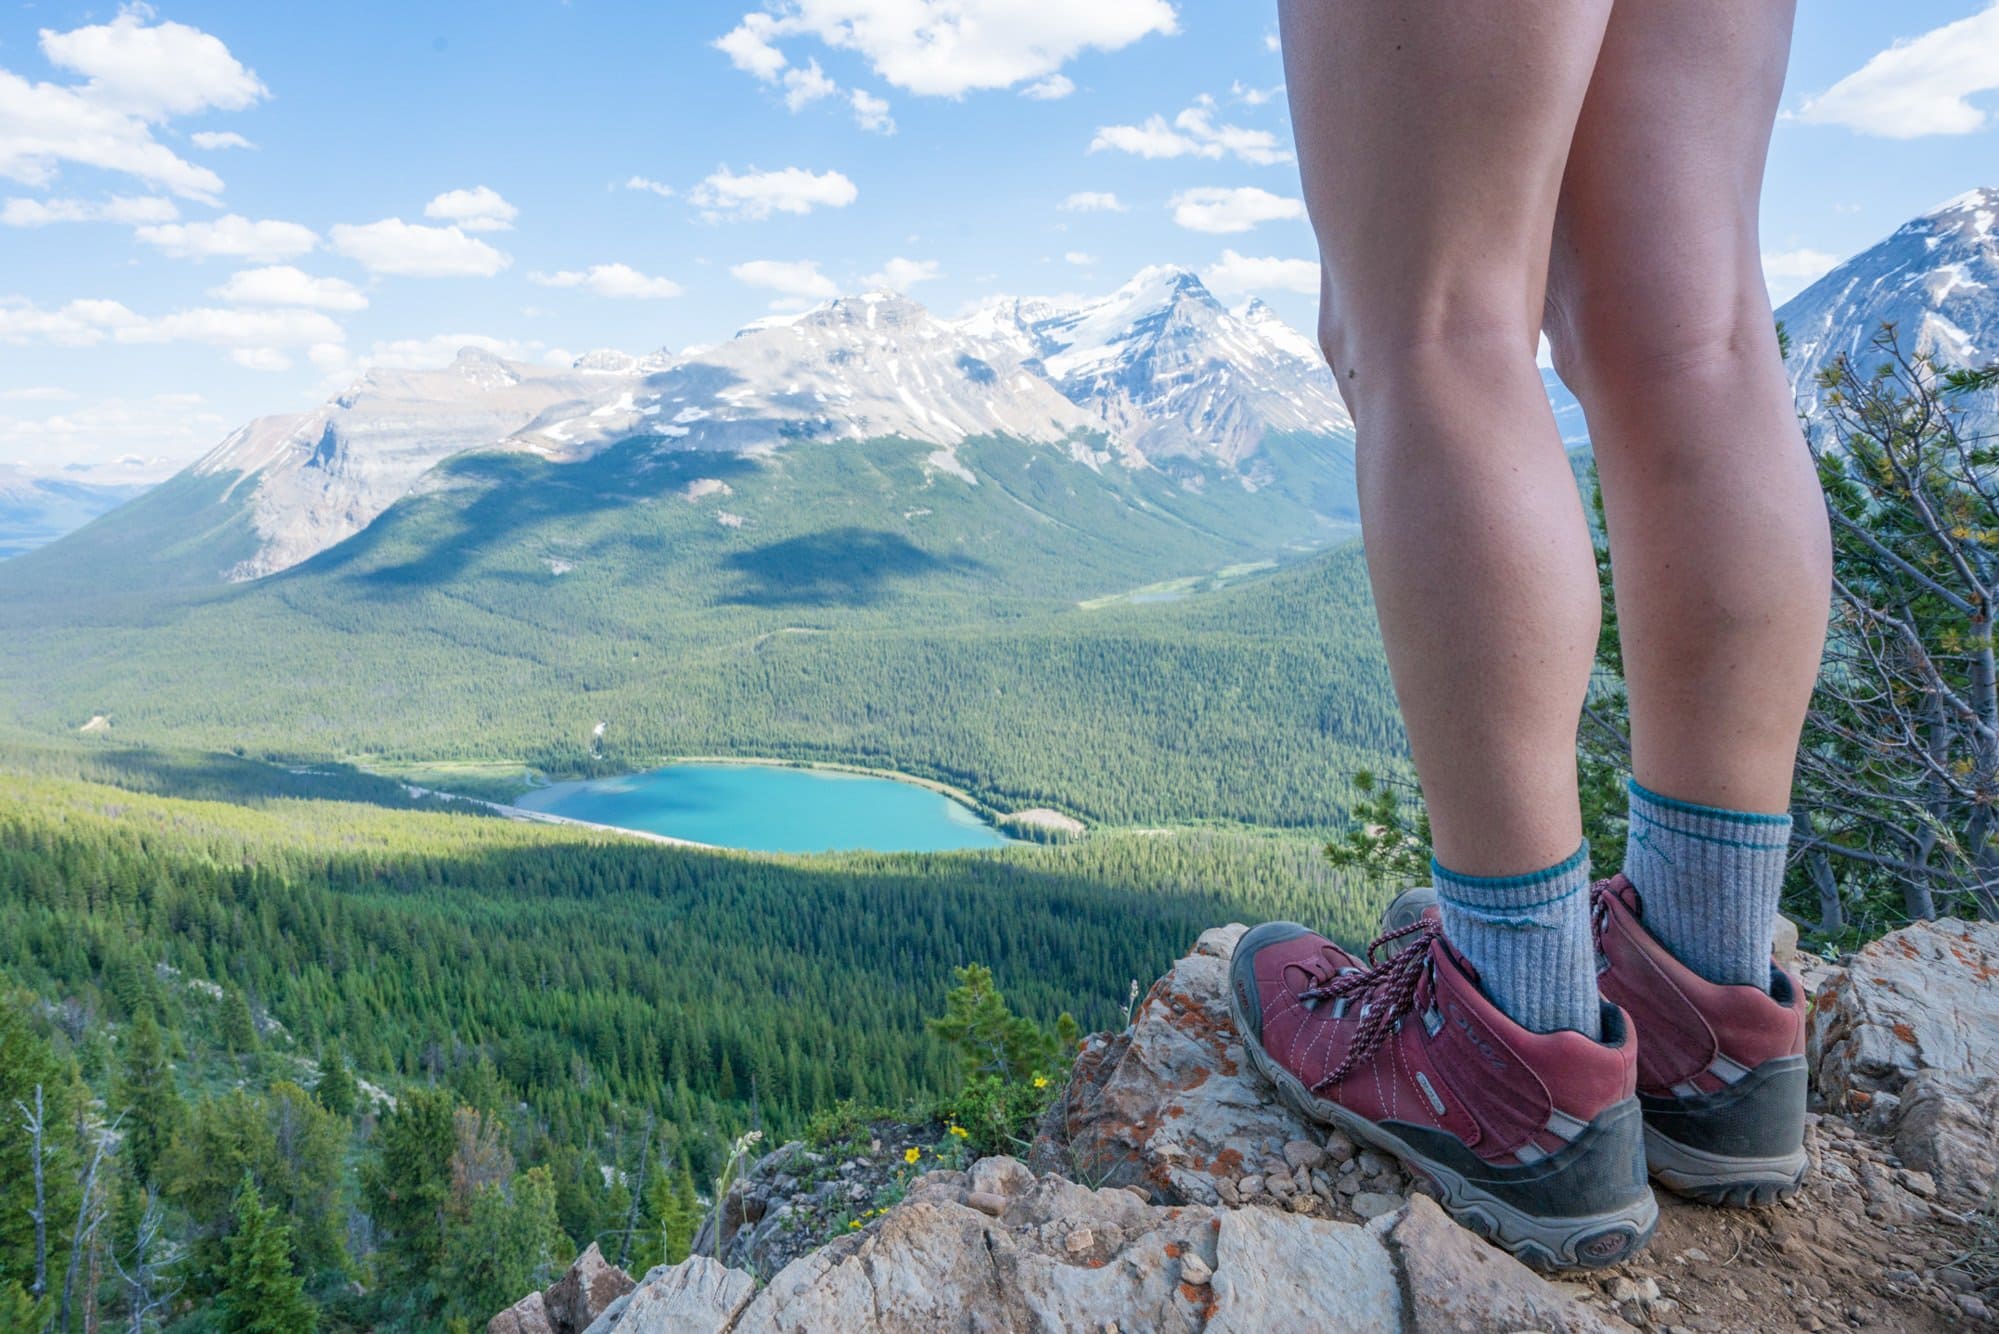 在为你的脚寻找最好的登山靴吗?在这篇博文中，我们比较了不同款式的登山鞋，以及在购买之前需要考虑的事项，包括步道条件、距离等。我们还根据我们目前在路上穿的衣服列出了最好的女性登山靴。